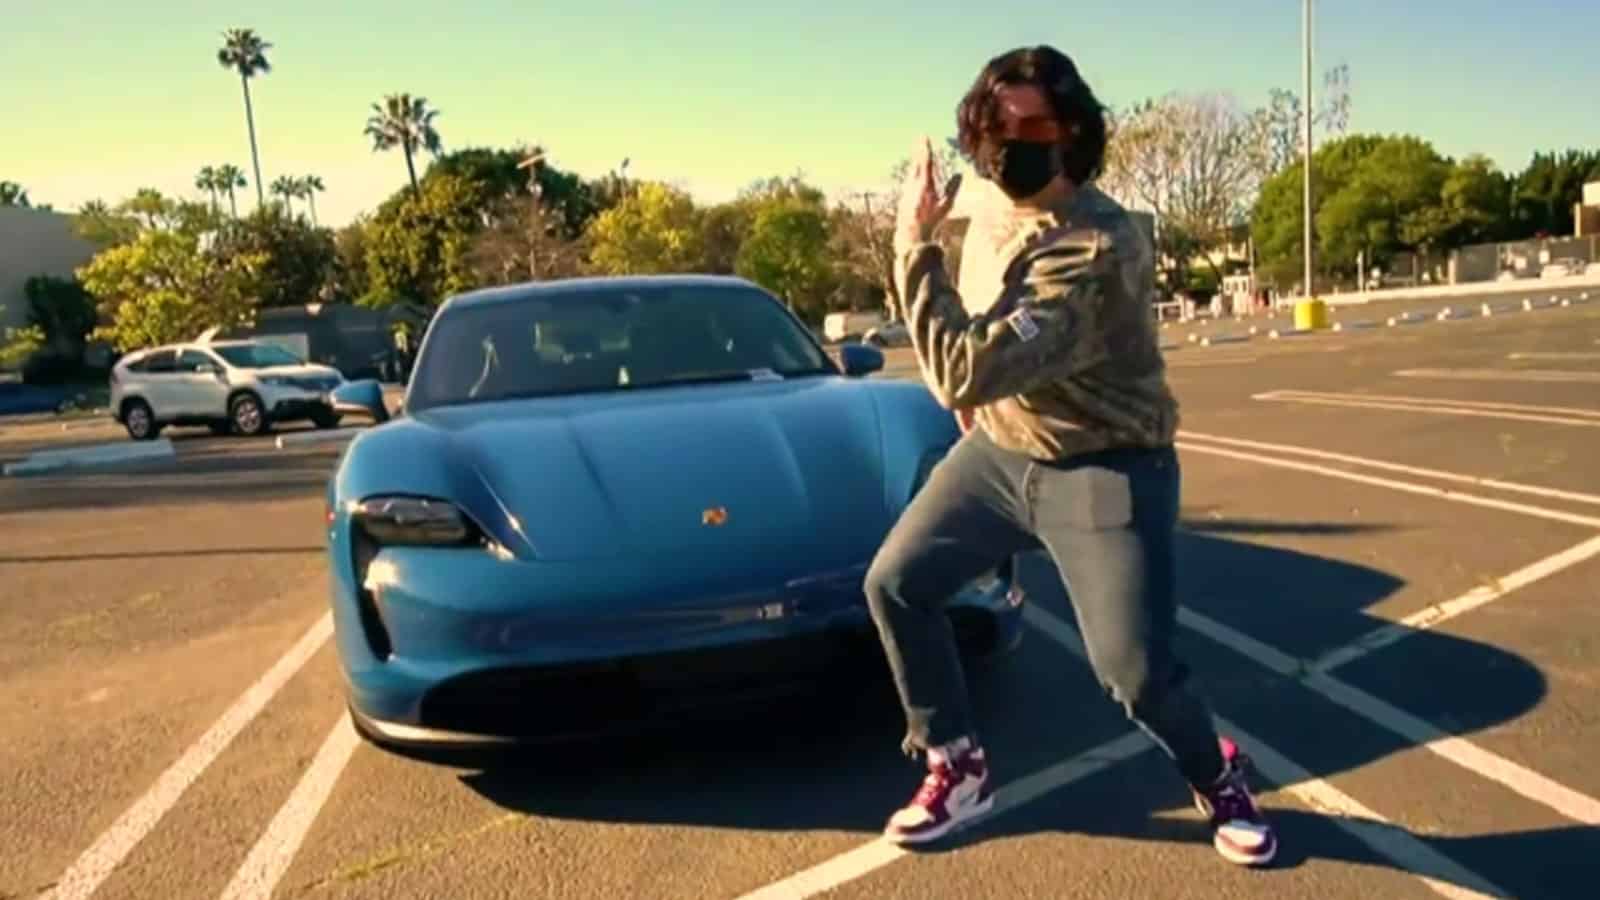 Hasanabi dancing next to his new $200,000 Porsche